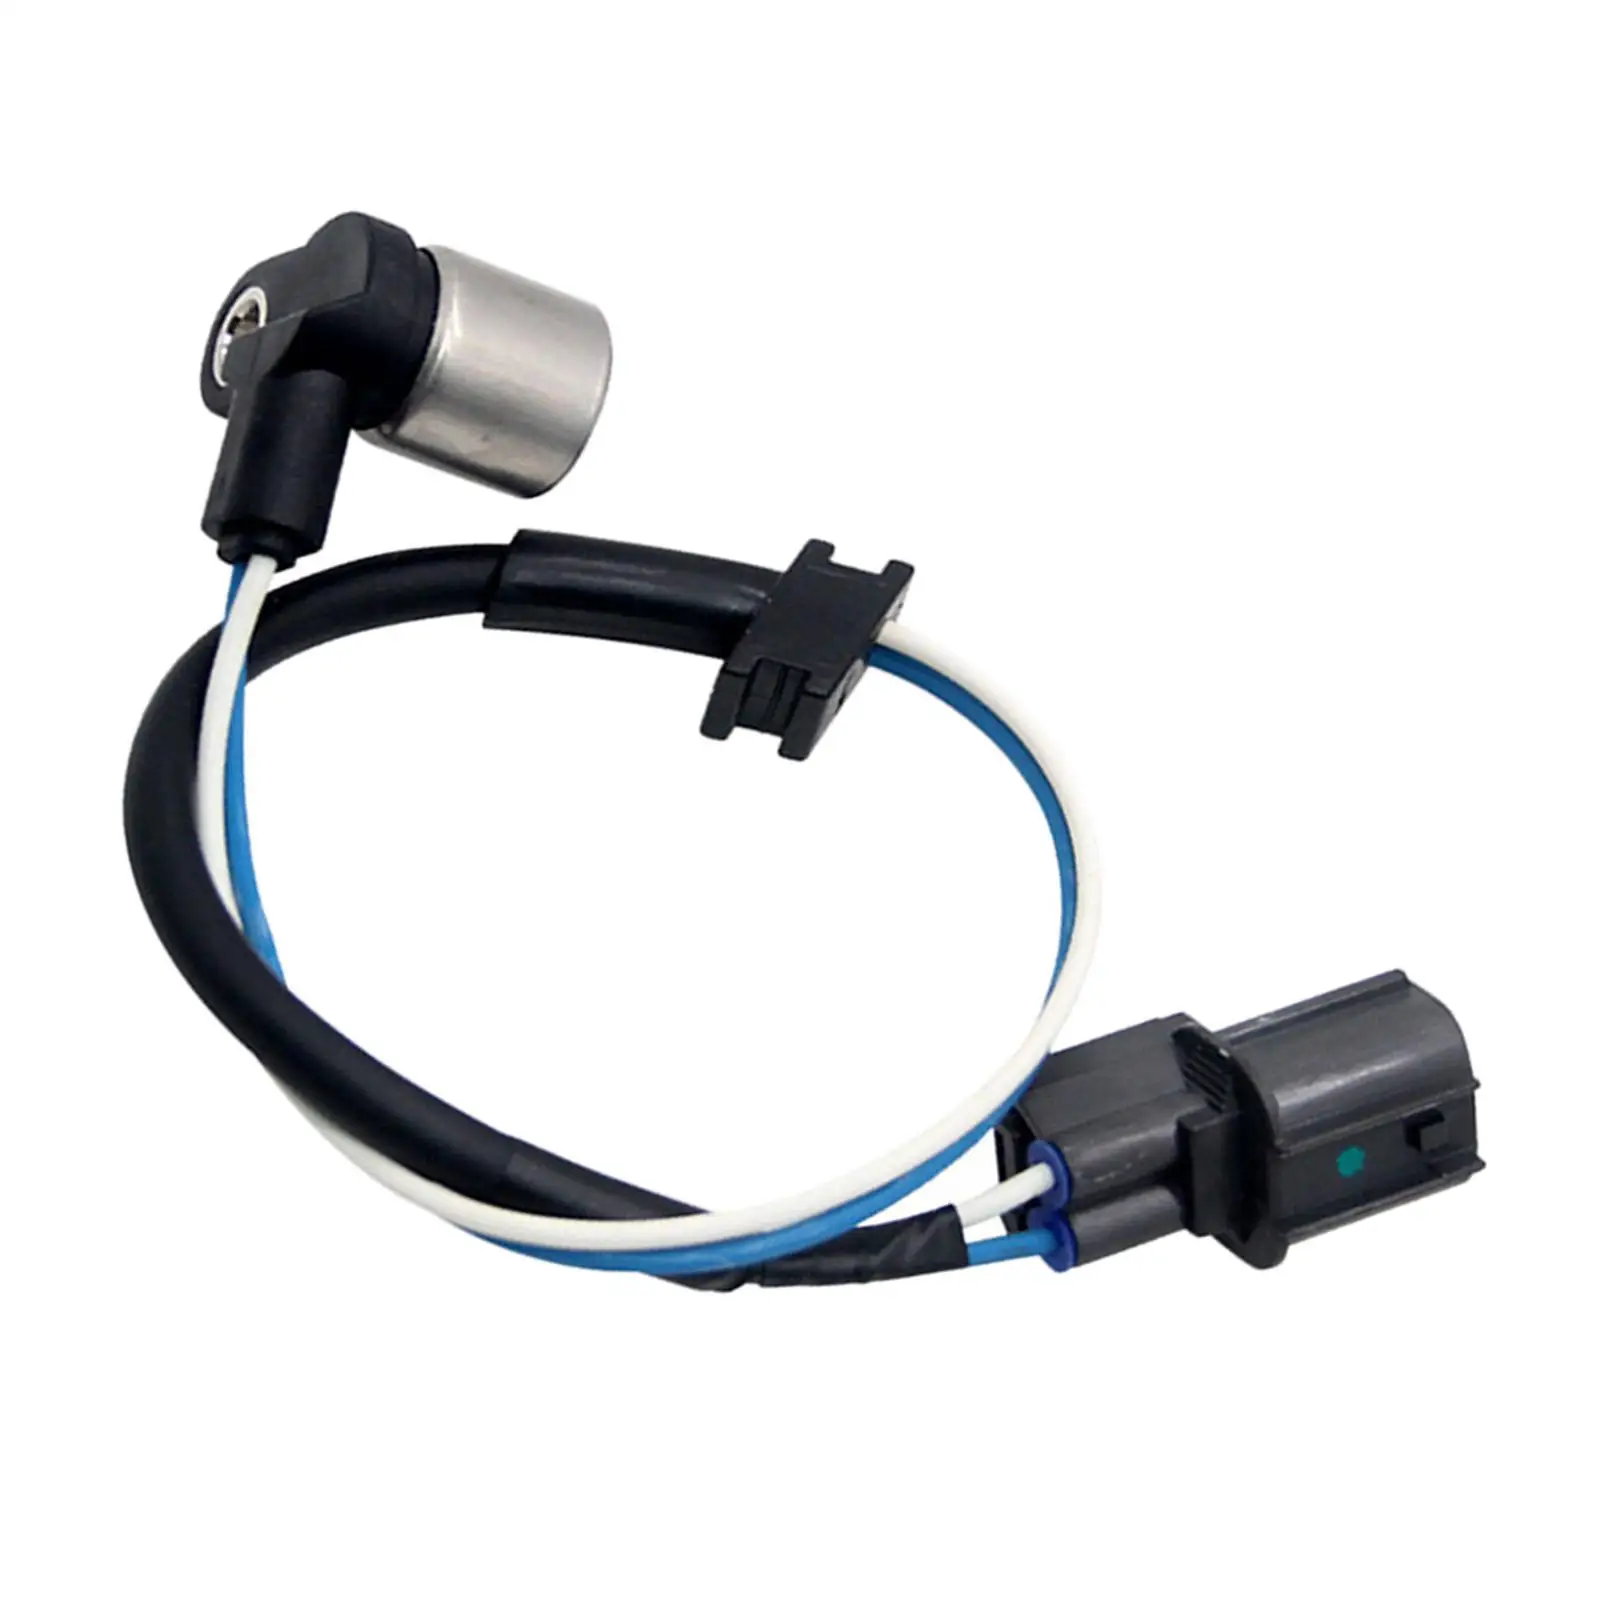 Engine Crankshaft Position Sensor 37501-P8F-A01 Fit for Honda Replace Parts ACC